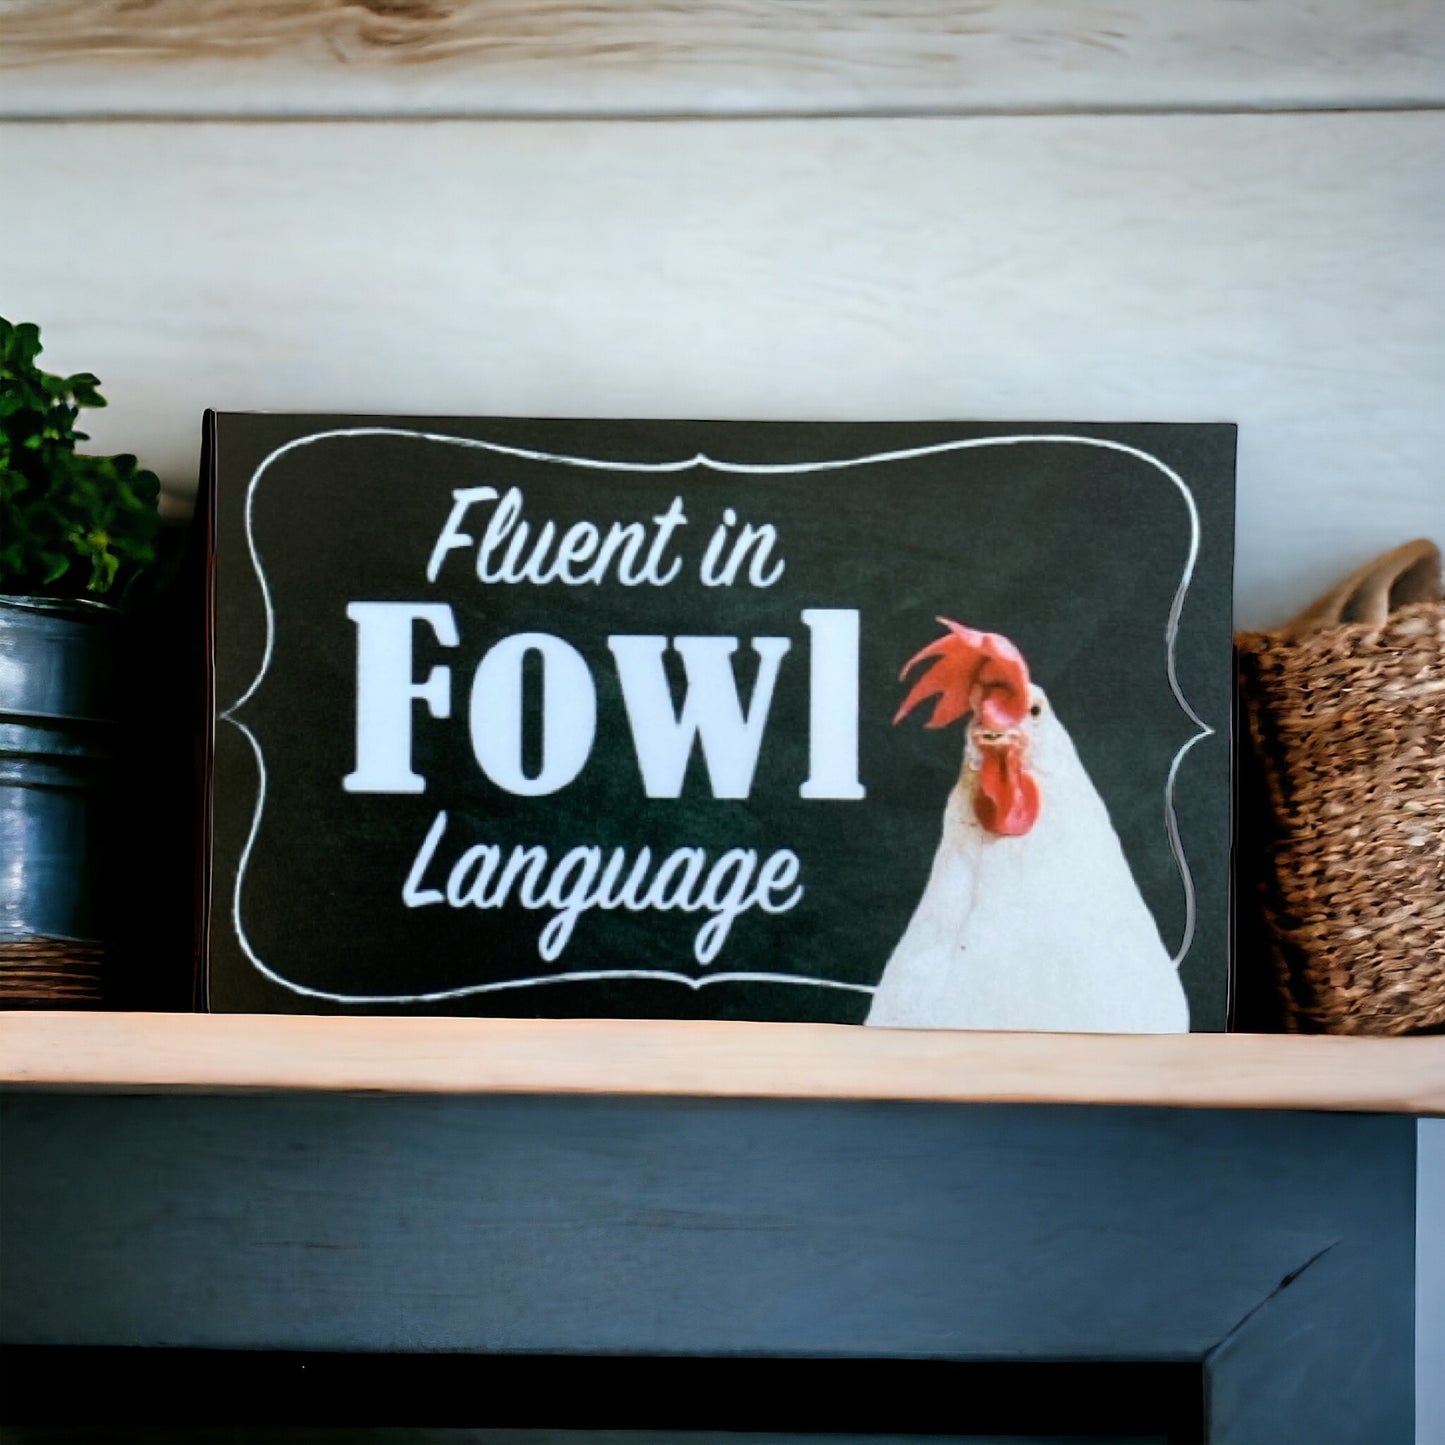 Fluent in Fowl Language Chicken Sign